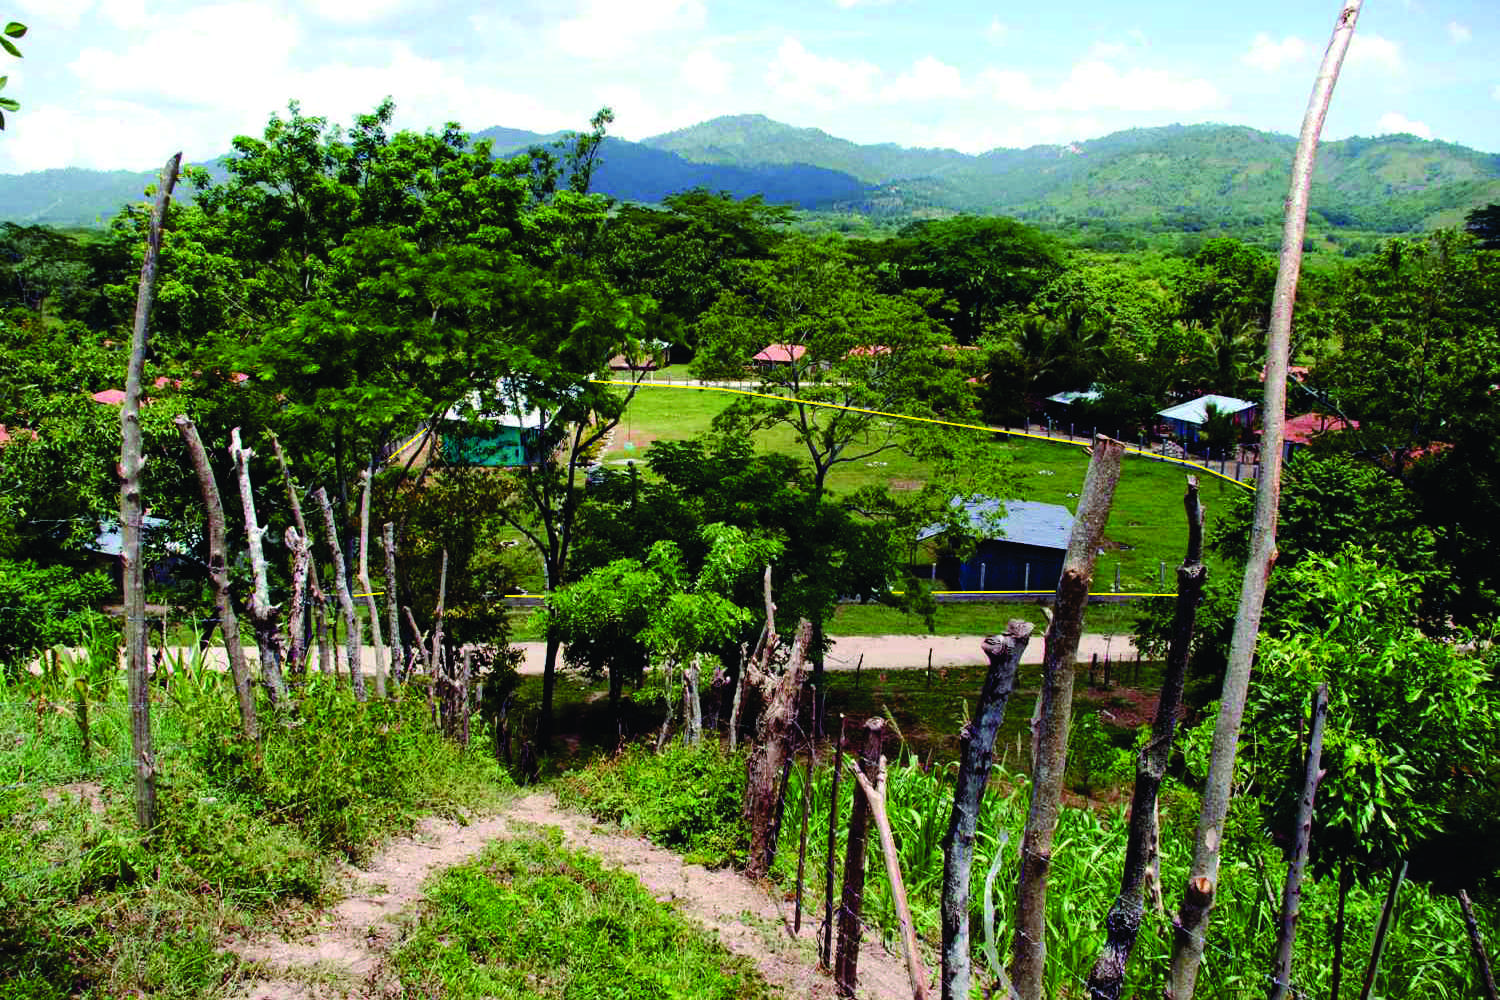 School in Las Casitas in Honduras before HEDAC improvements